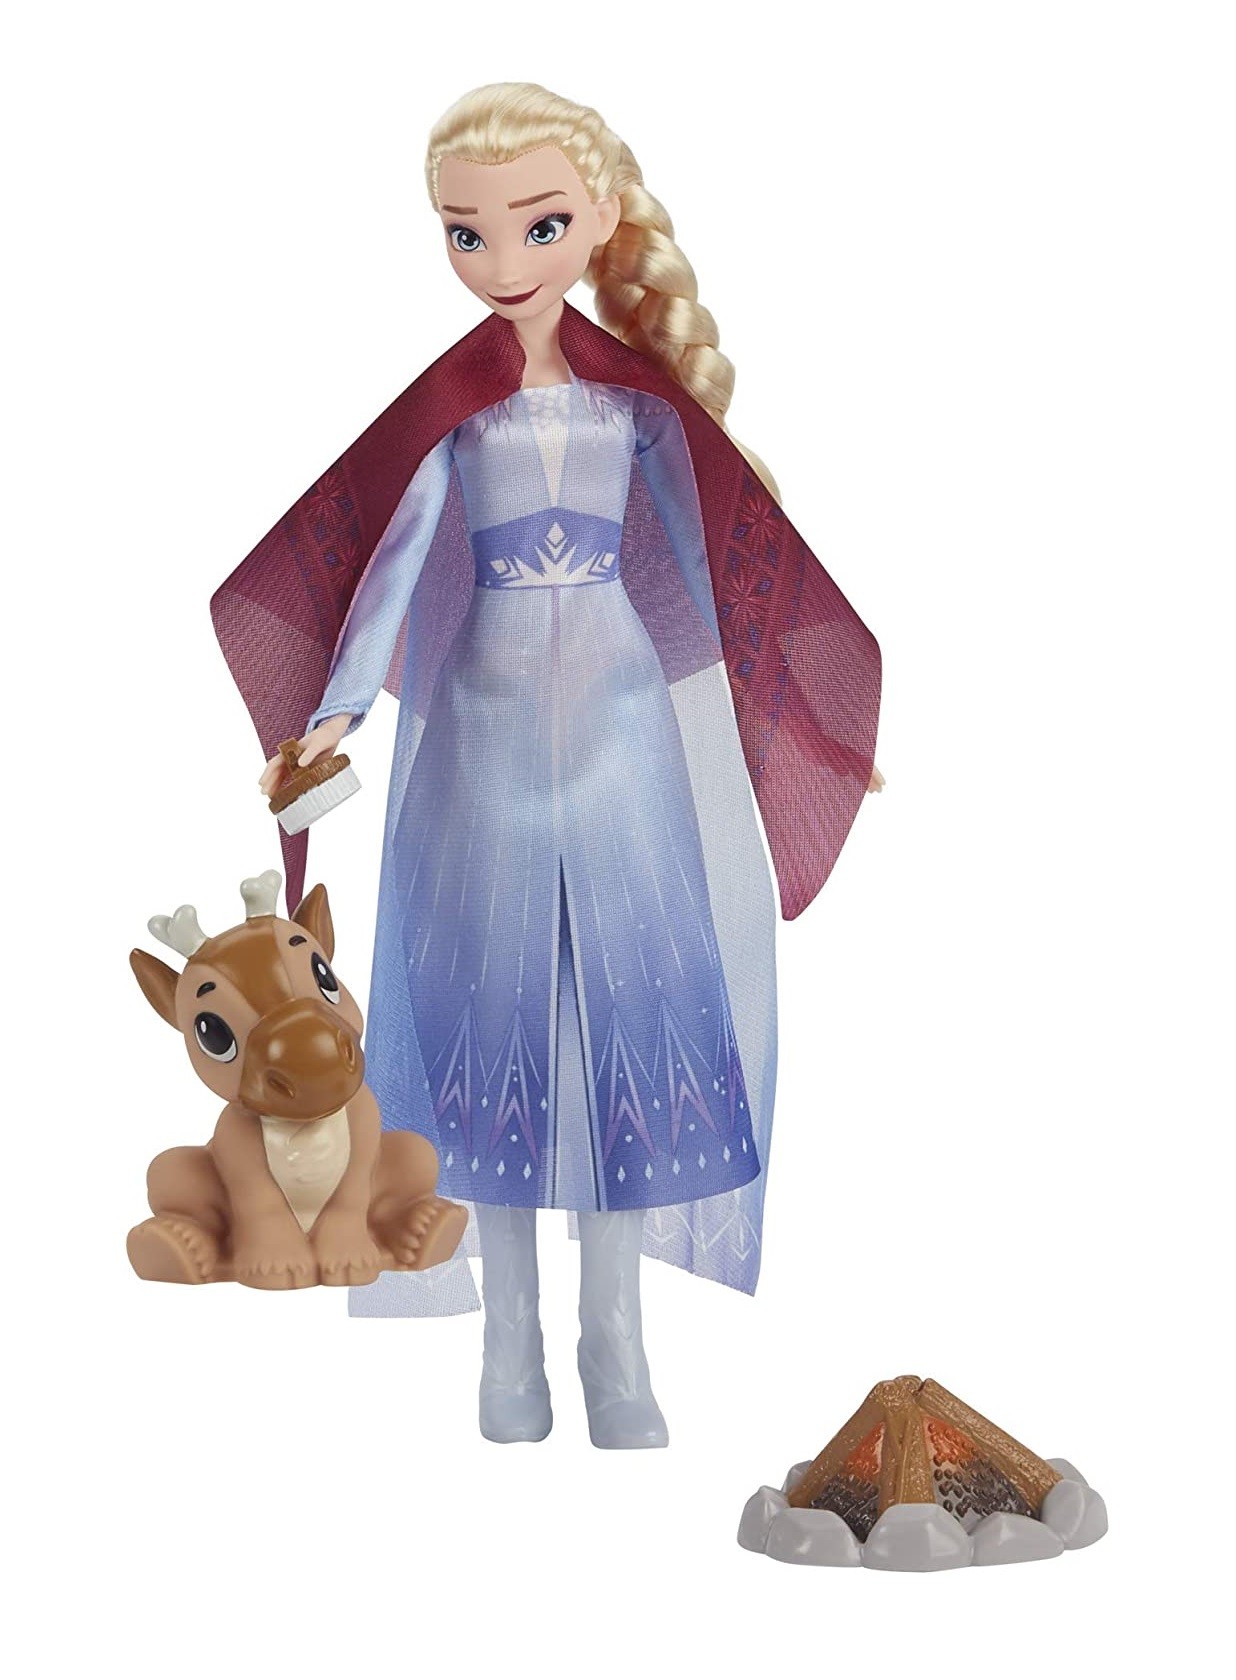 Frozen Children Accessories, Frozen Disney Accessories